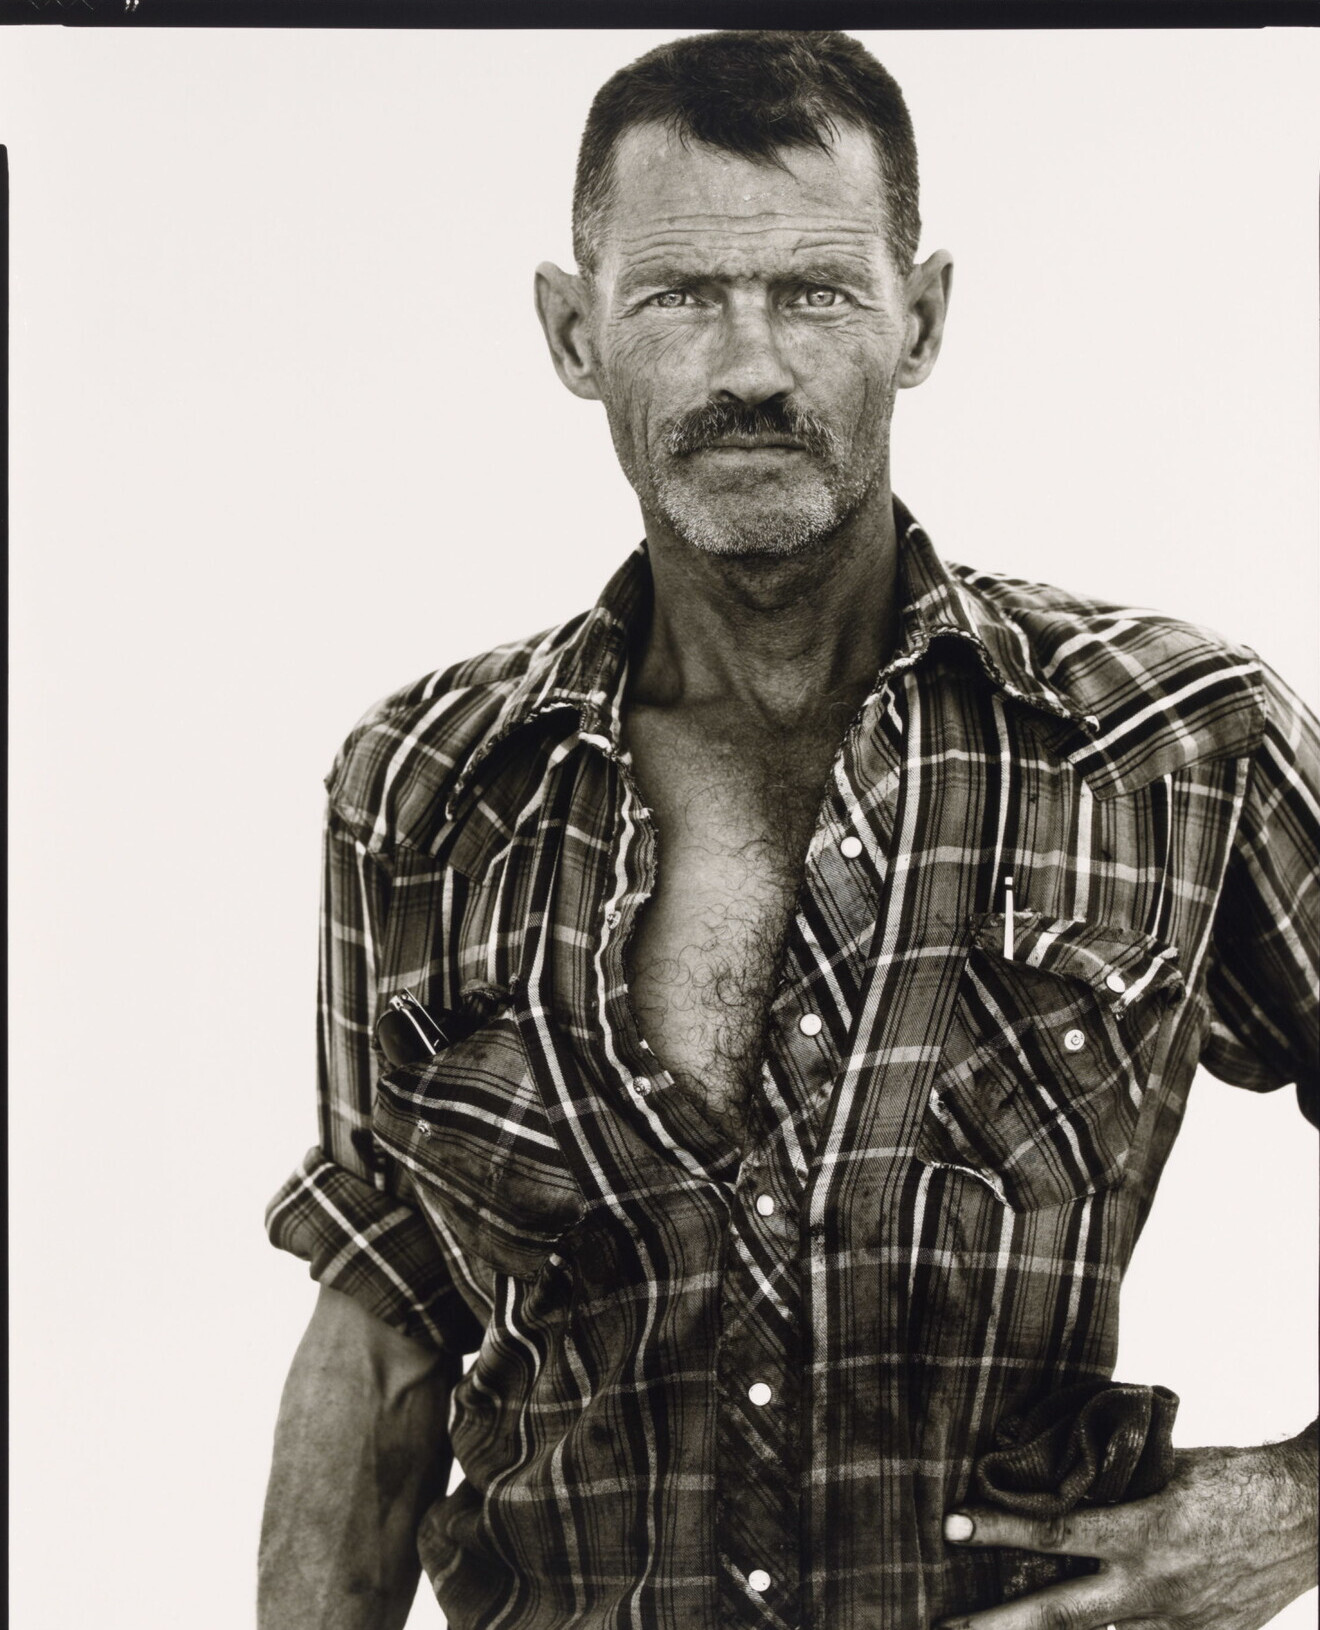 Джеймс Лайкинс, нефтяник, Роусон, Северная Дакота, 1982 г. Фотограф Ричард Аведон